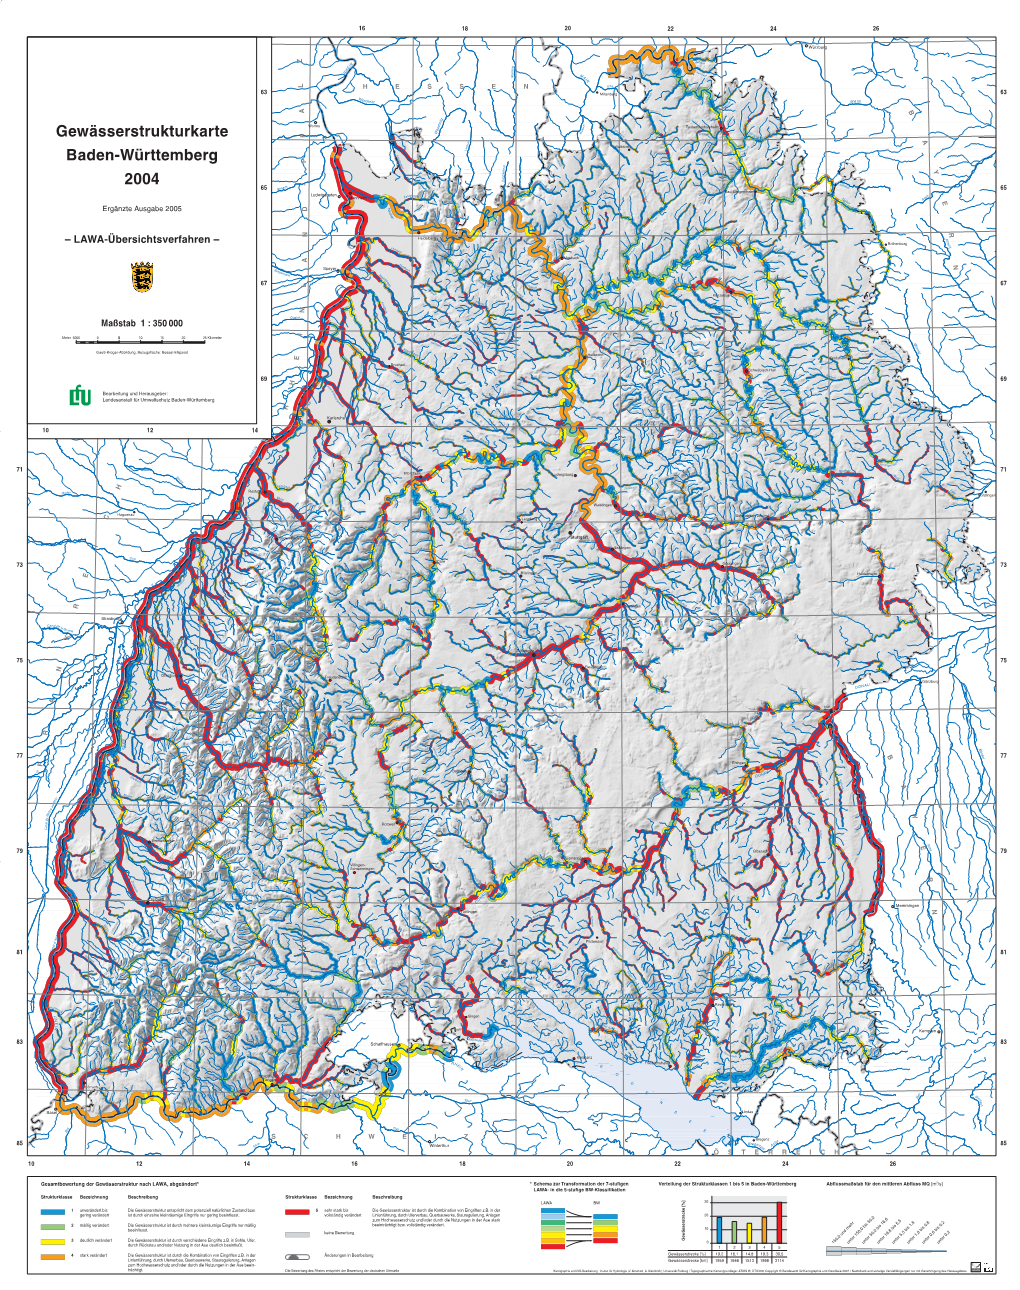 Gewässerstrukturkarte Baden-Württemberg 2004